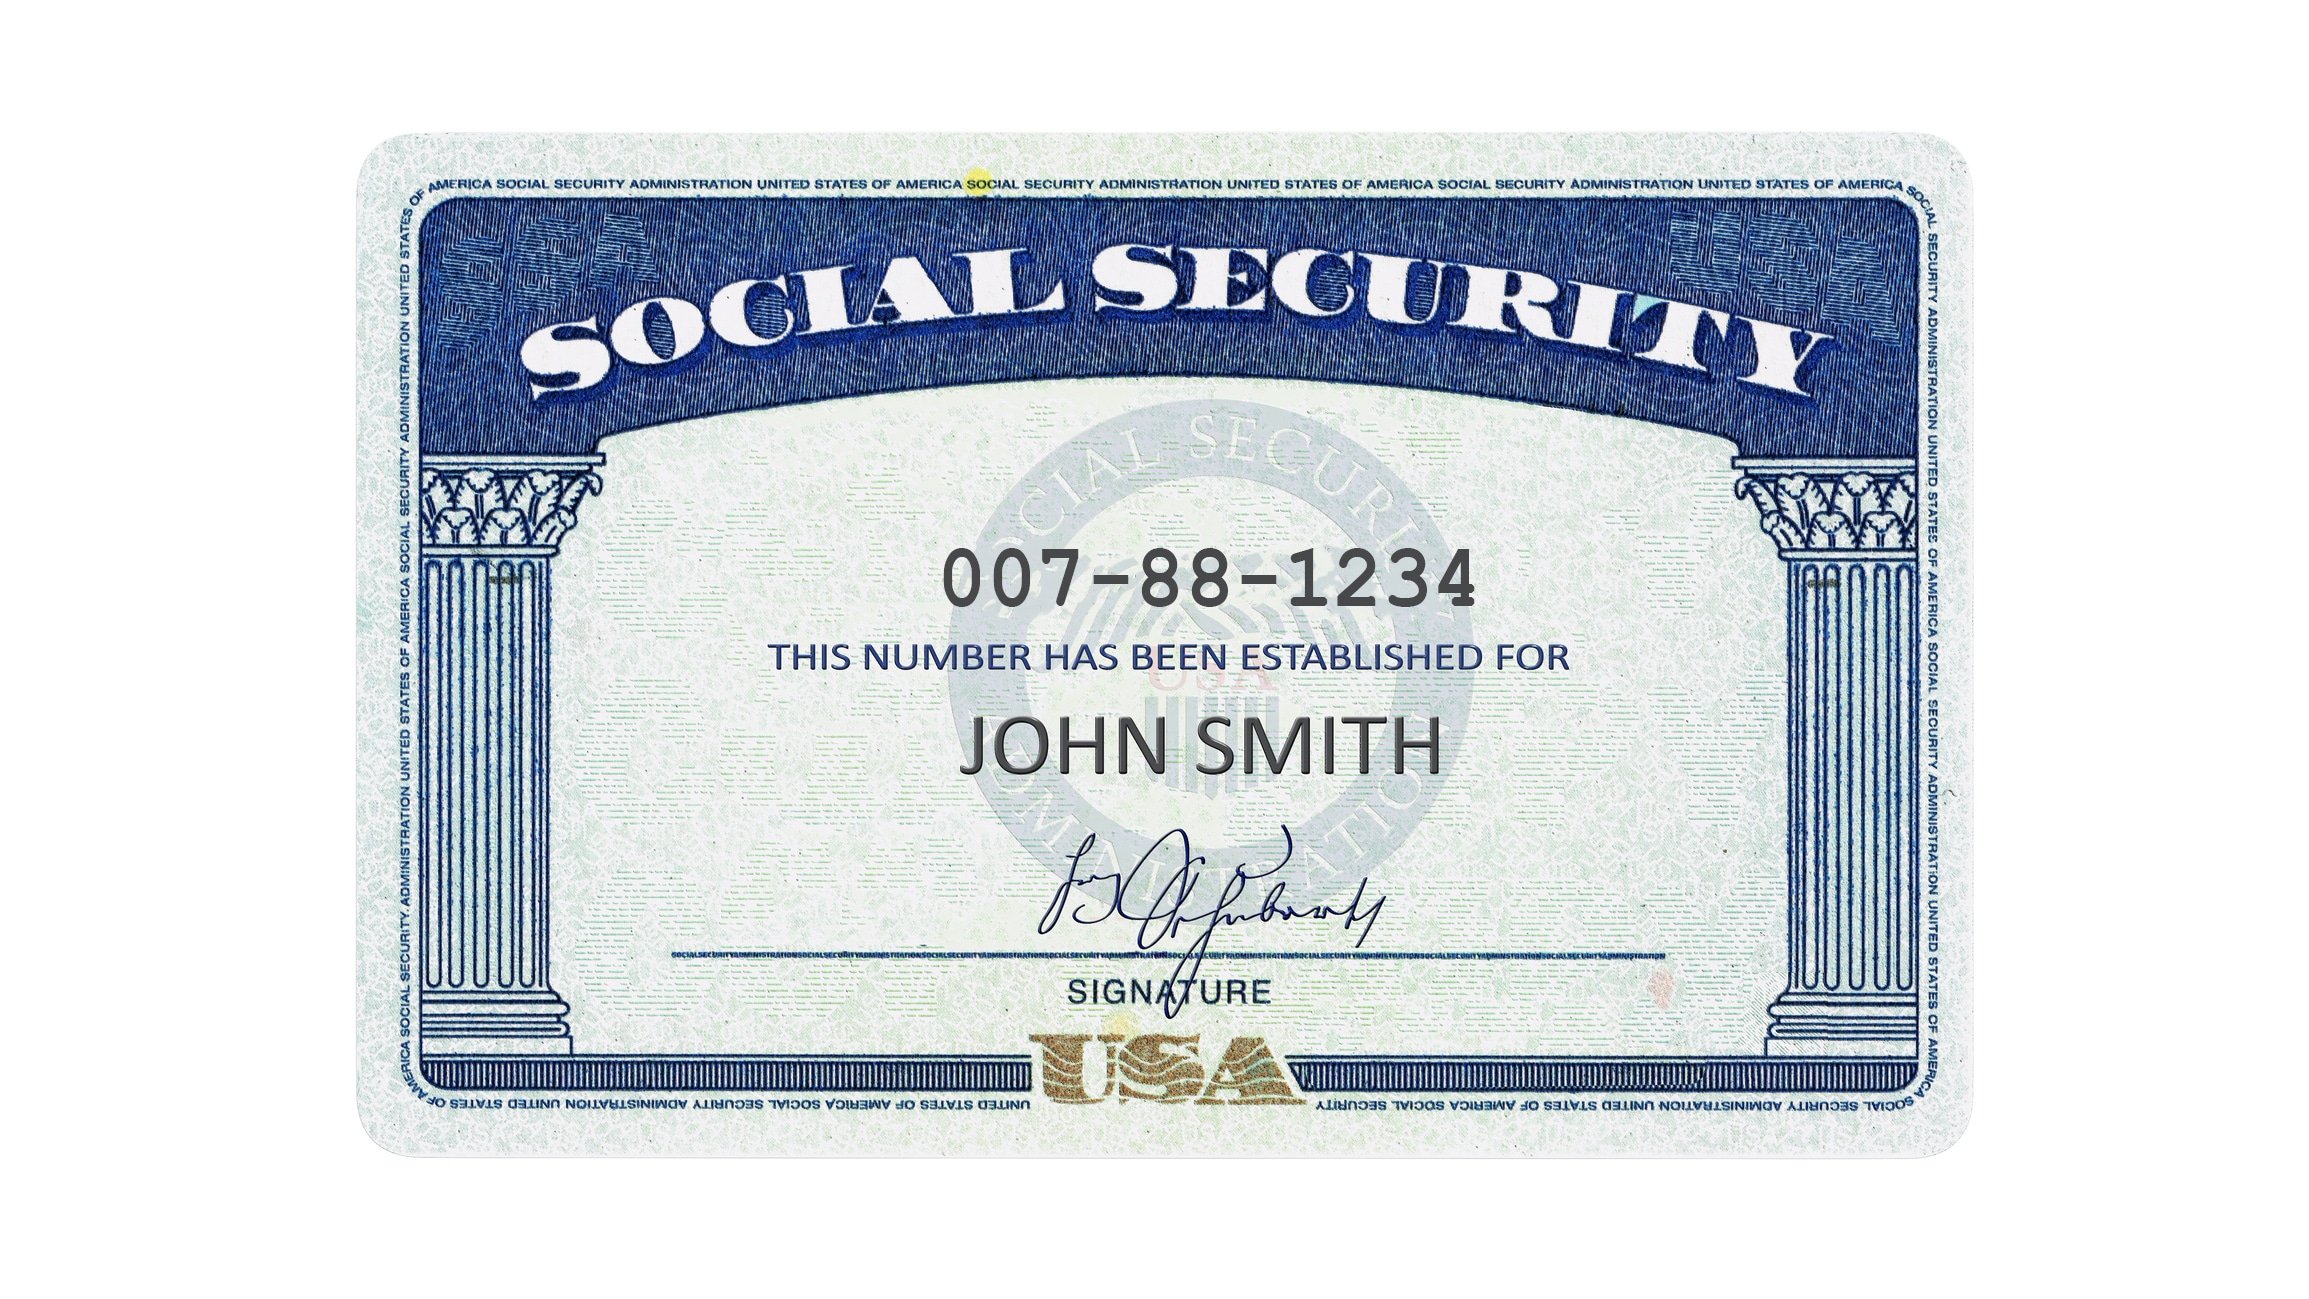 How Do I Get a Social Security Card as a Non